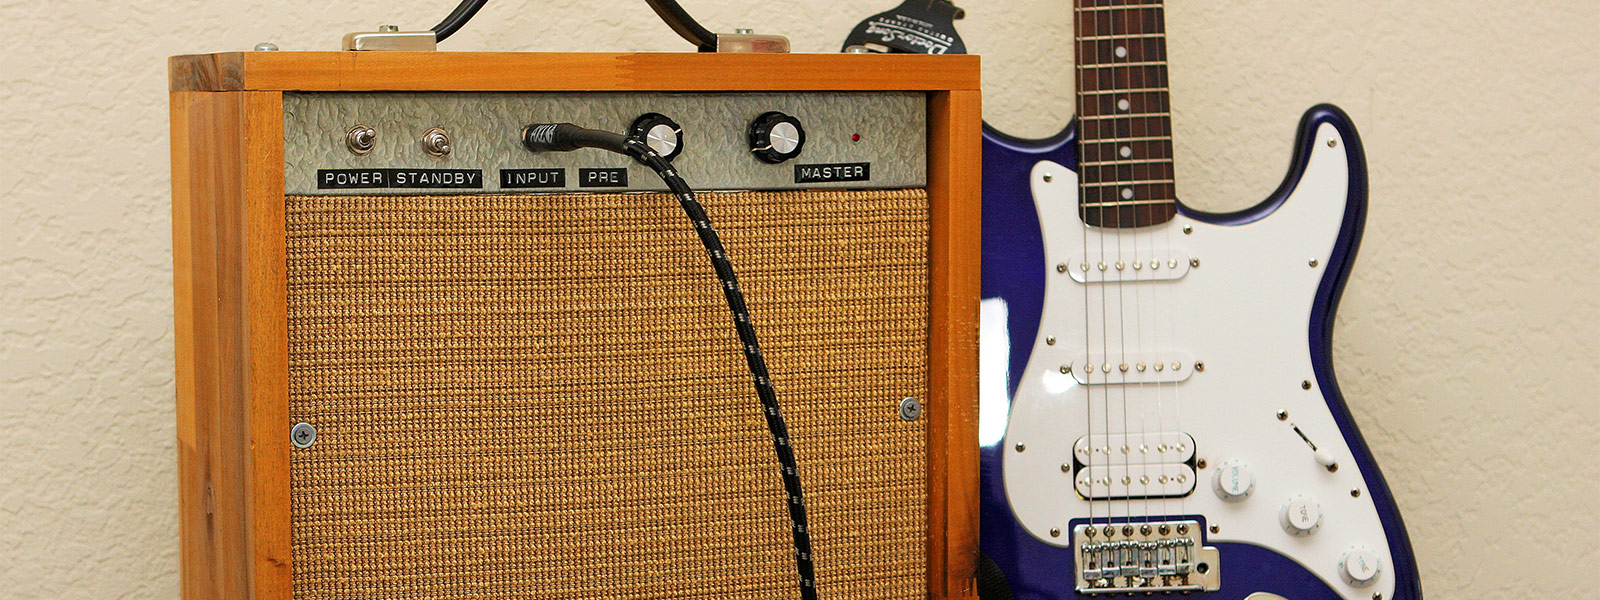 Audio Engineering - Little Diesel Single Ended Guitar Amp by Sean Rose